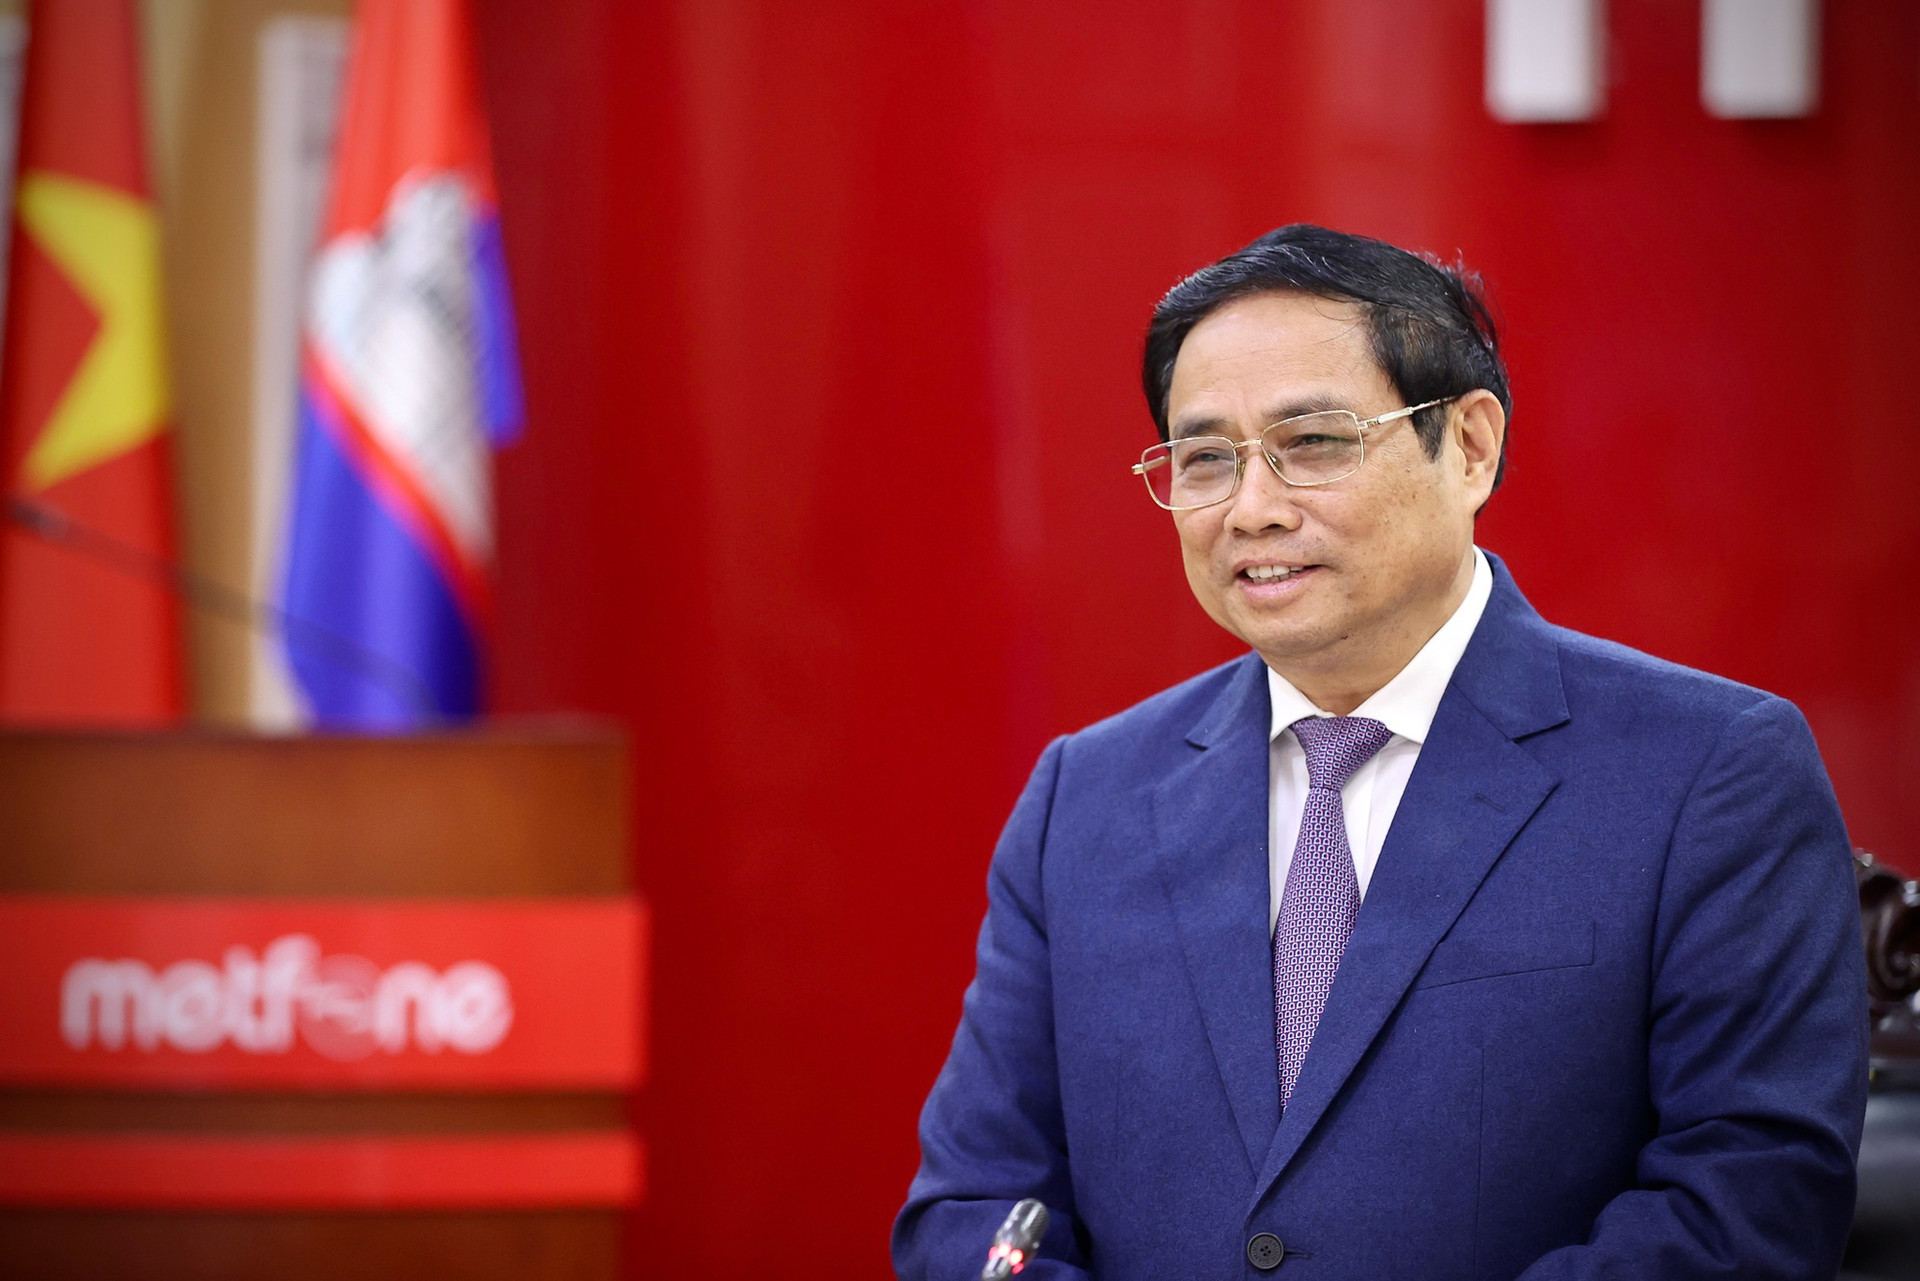 Thủ tướng thăm doanh nghiệp viễn thông lớn nhất Campuchia do Việt Nam đầu tư - Ảnh 4.